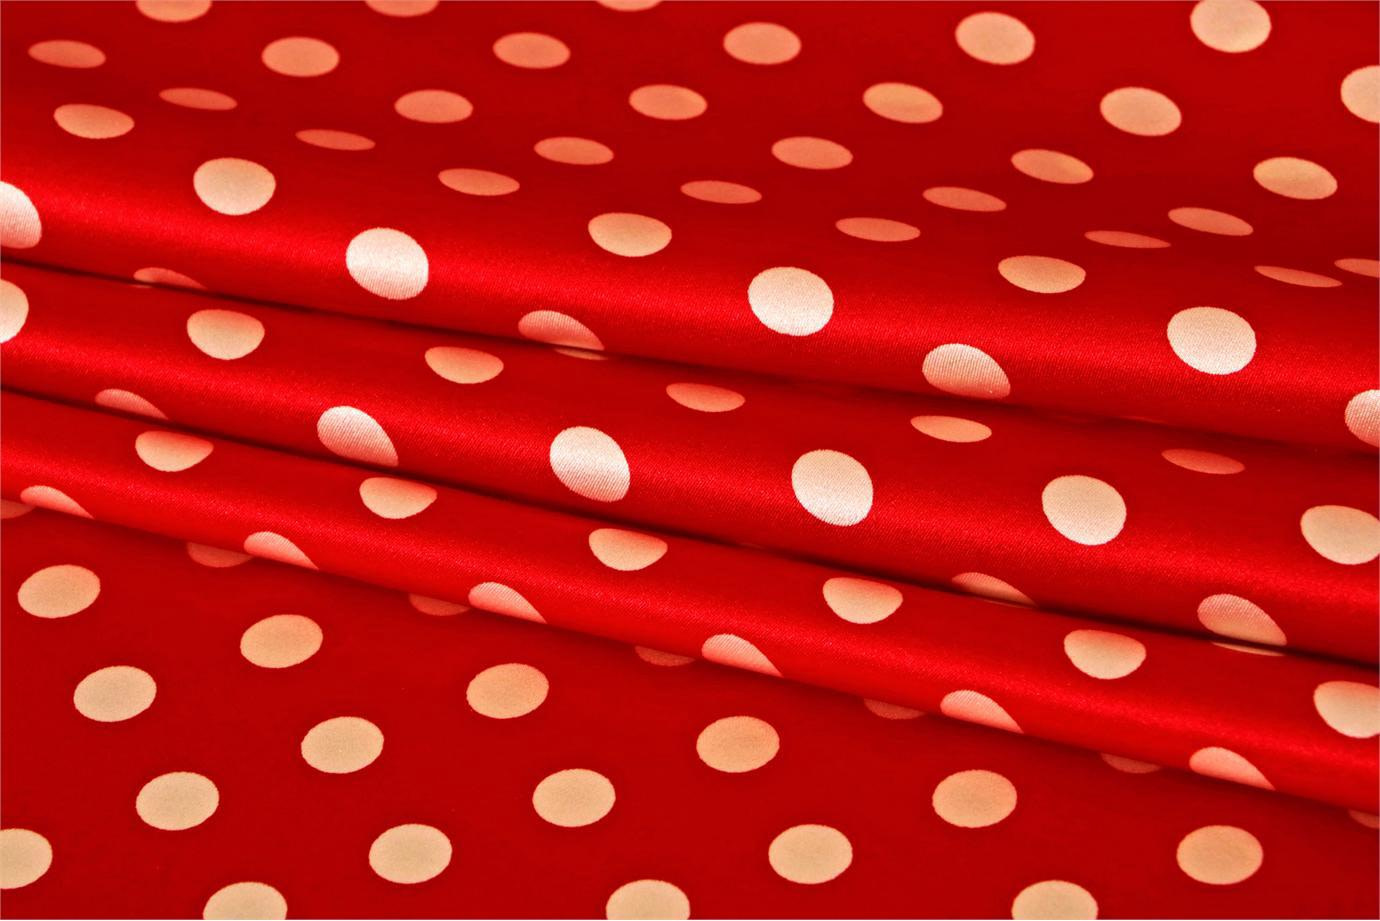 Red, White Silk Satin Polka Dot Fabric - Raso Se Omnibus Pois 201303